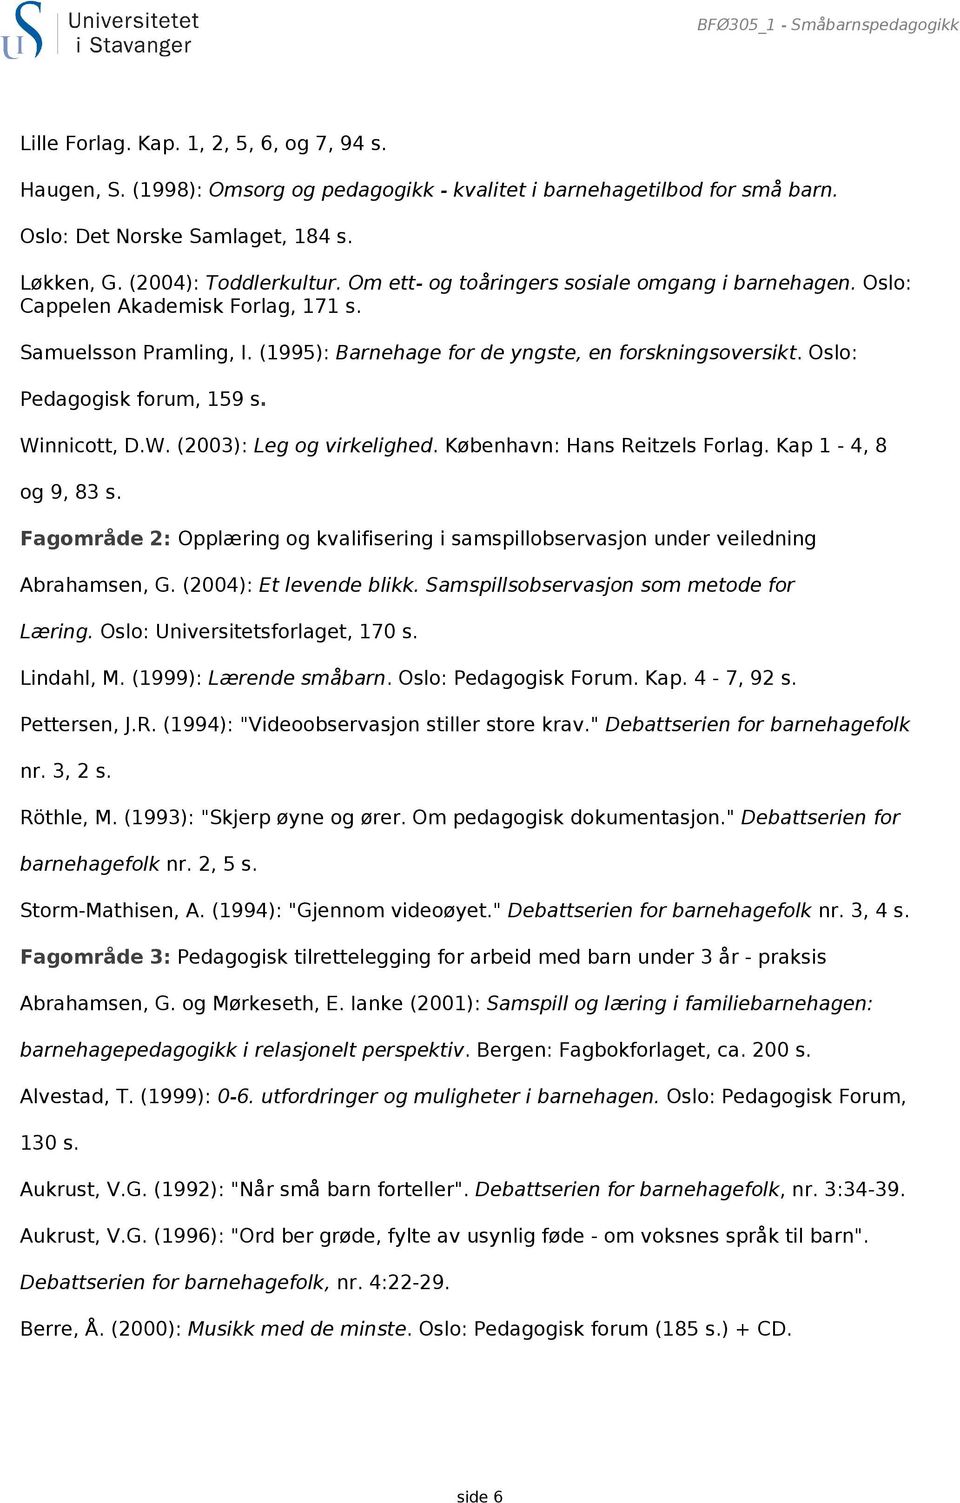 Oslo: Pedagogisk forum, 159 s. Winnicott, D.W. (2003): Leg og virkelighed. København: Hans Reitzels Forlag. Kap 1-4, 8 og 9, 83 s.